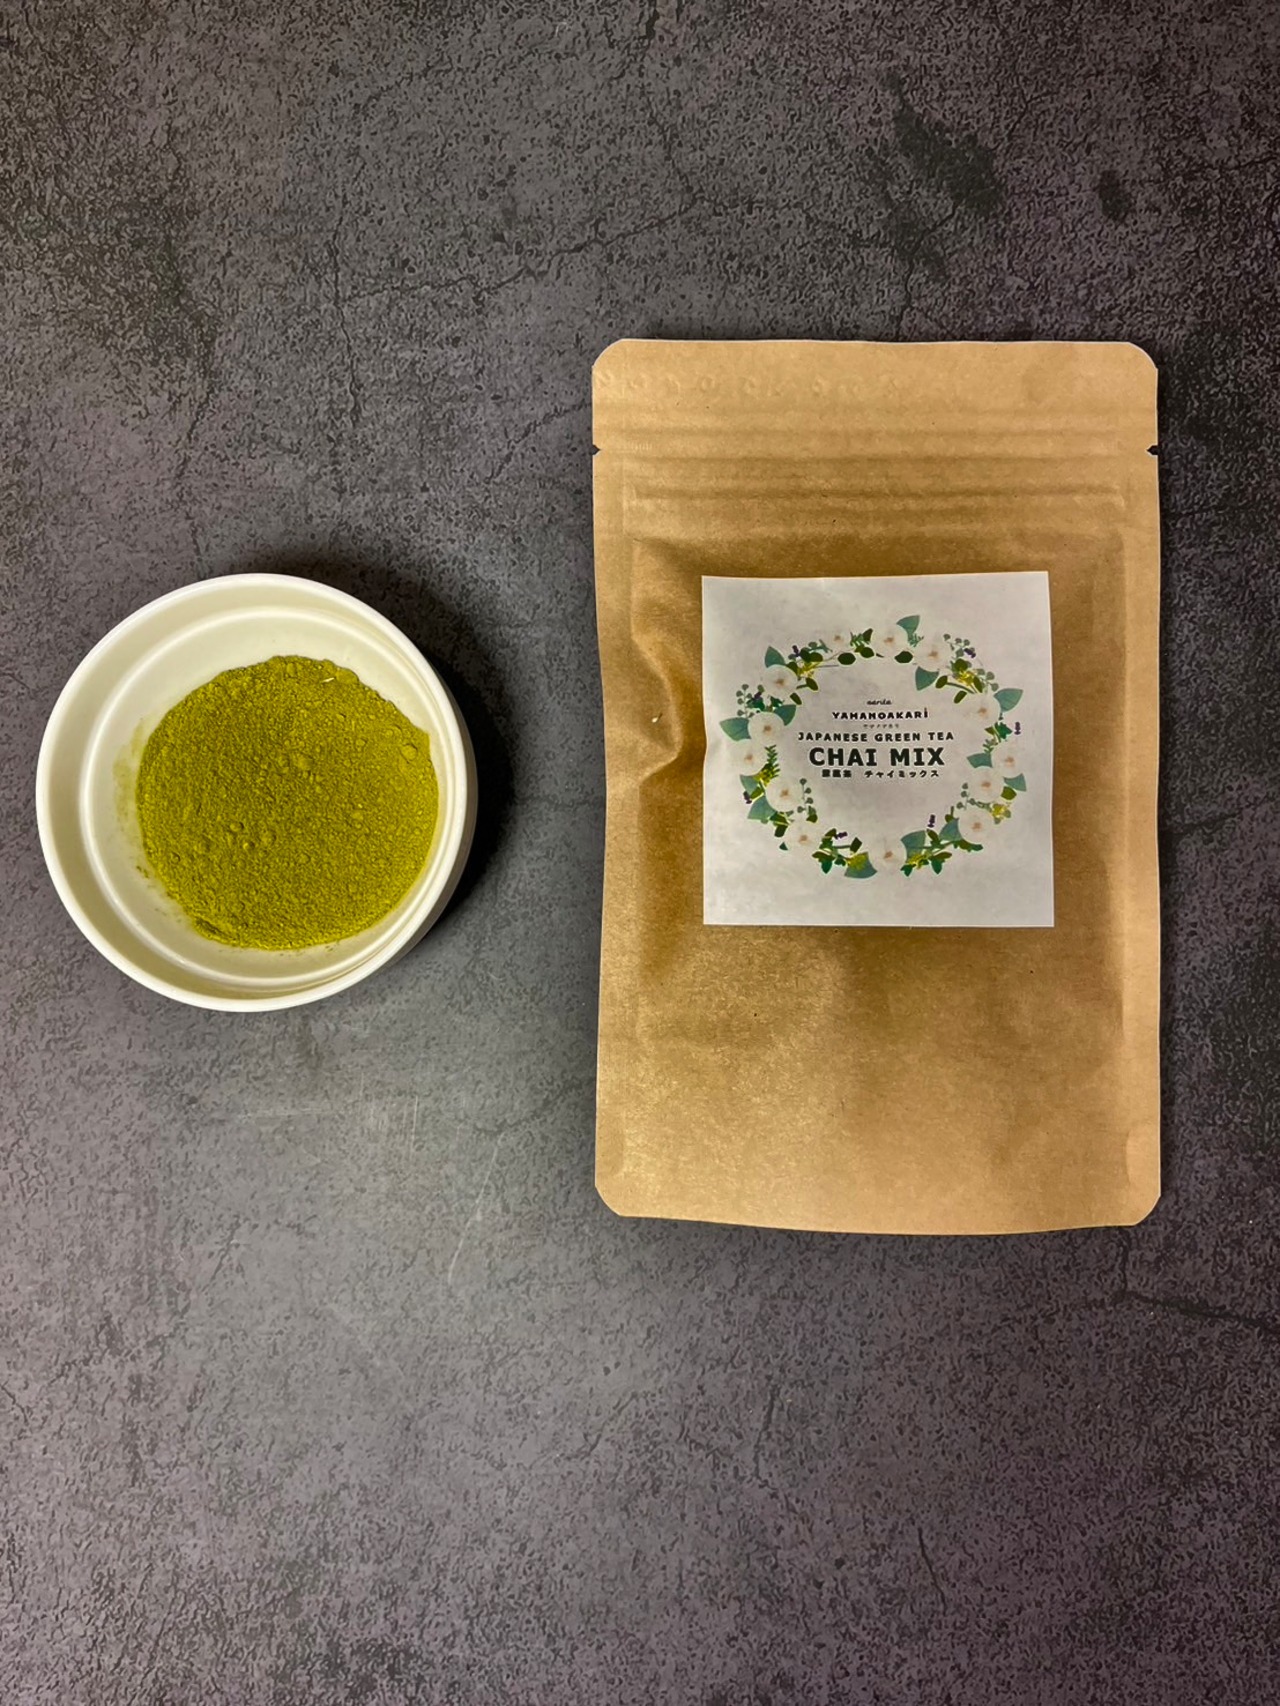 深蒸茶チャイミックスパウダー -Japanese Green Tea Chai Mix powder-